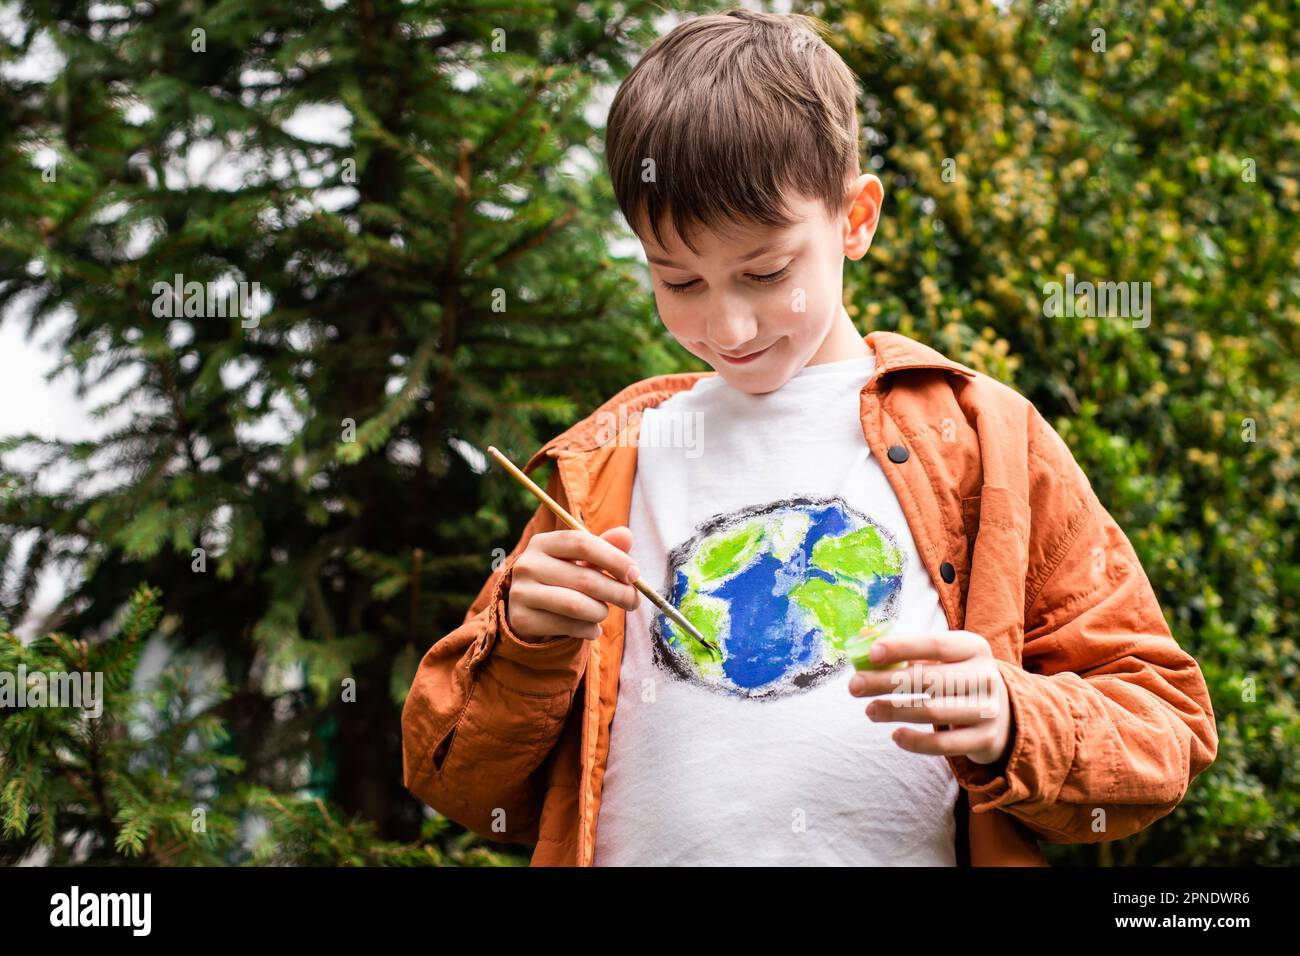 Concept de mode de vie durable. Un écolier dessine un globe terrestre sur un t-shirt. Énergie verte, ESG, ressources renouvelables, protection de l'environnement, protection de la planète Banque D'Images